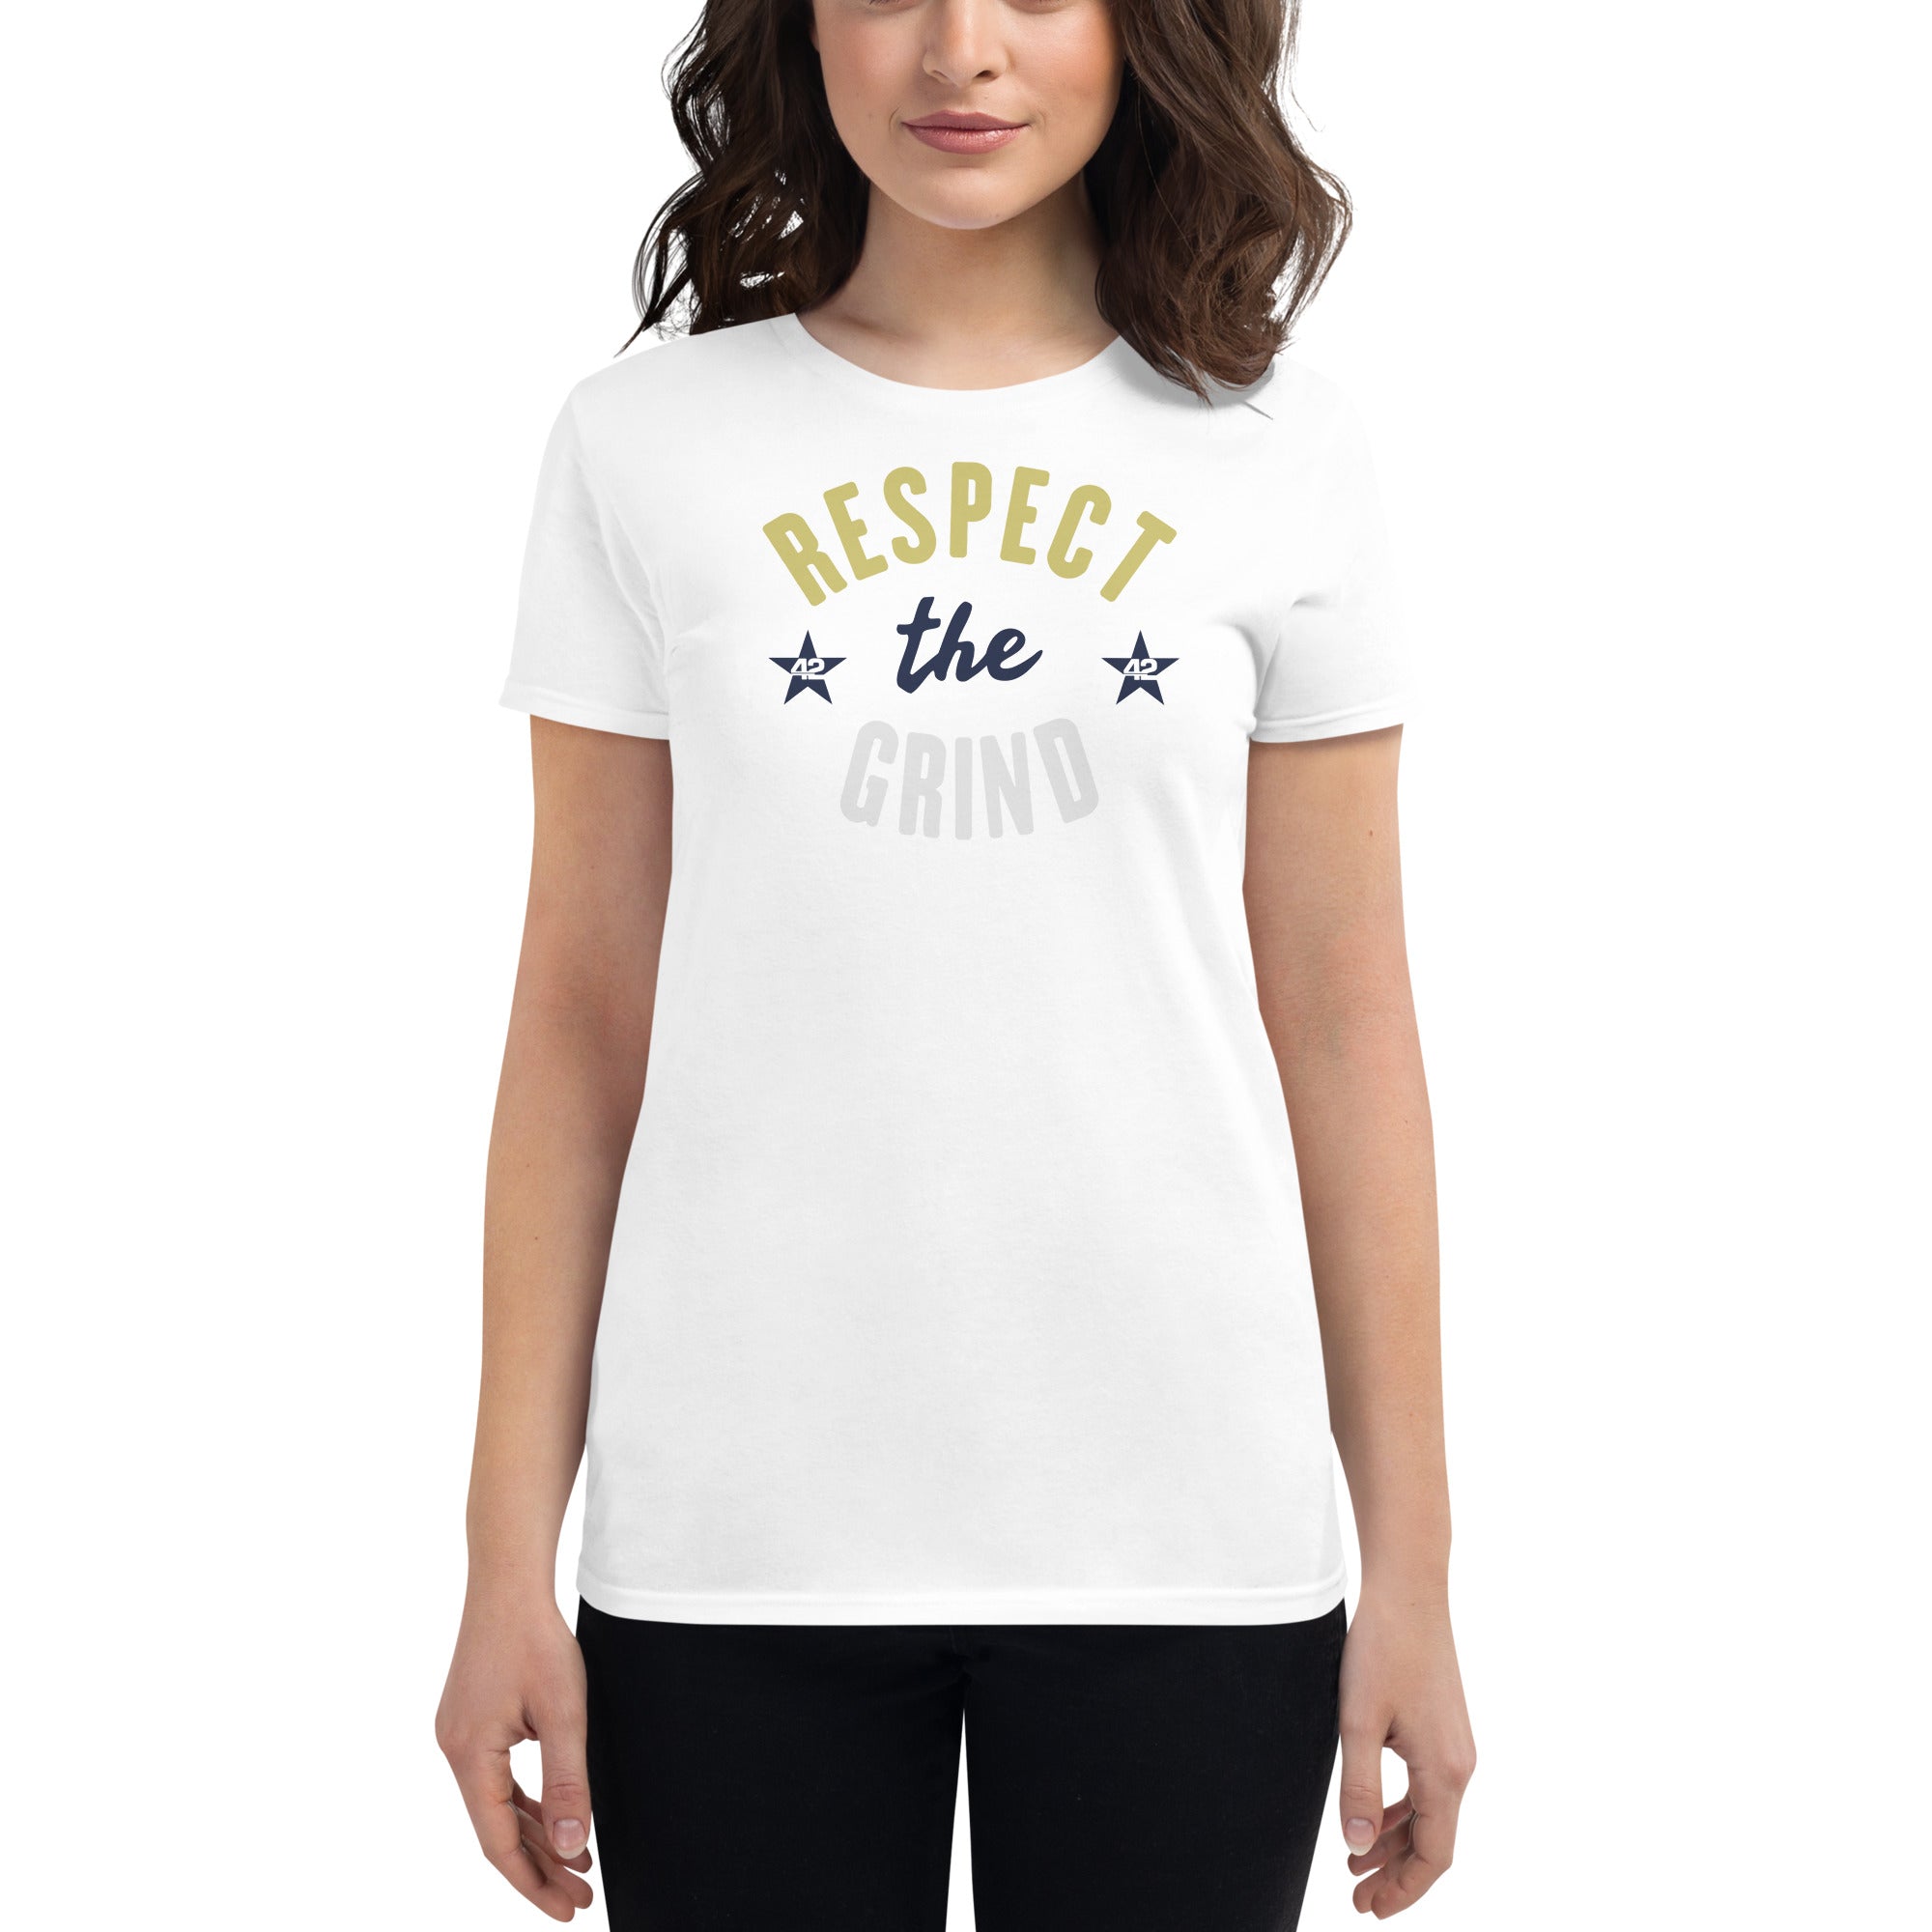 Respect Women's short sleeve t-shirt